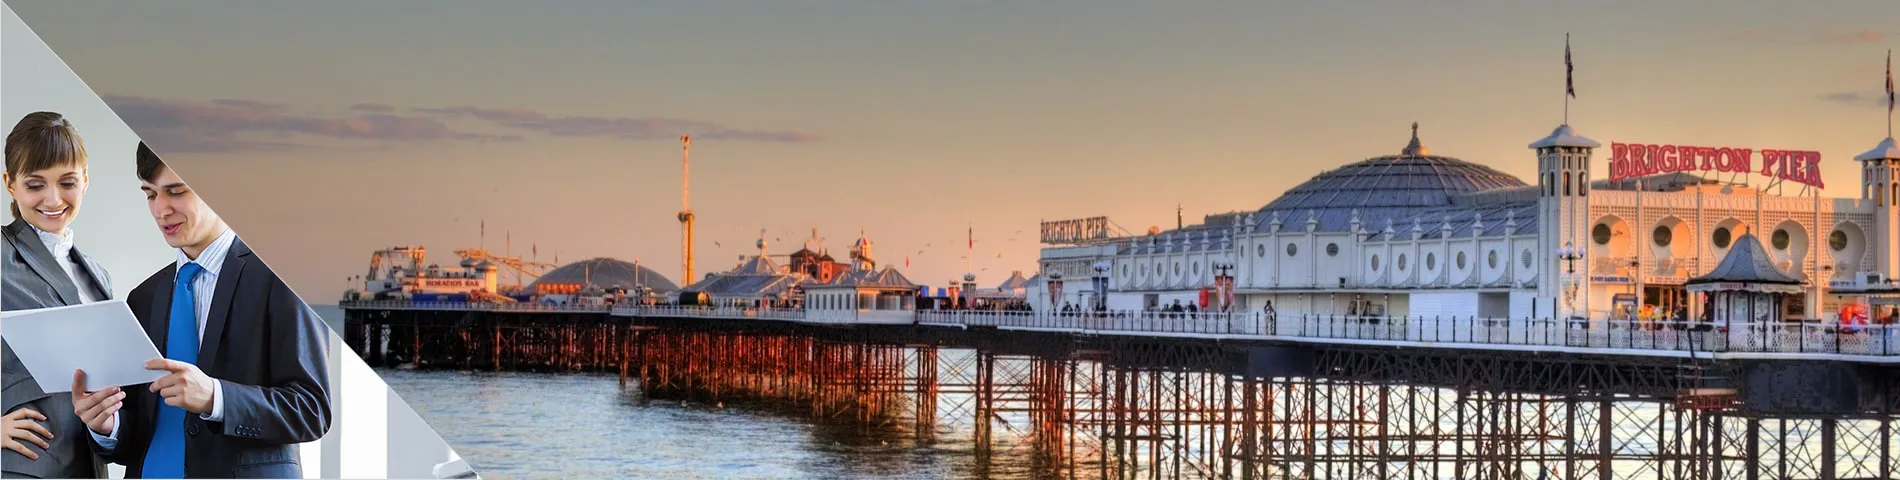 Brighton - Individuell businesskurs